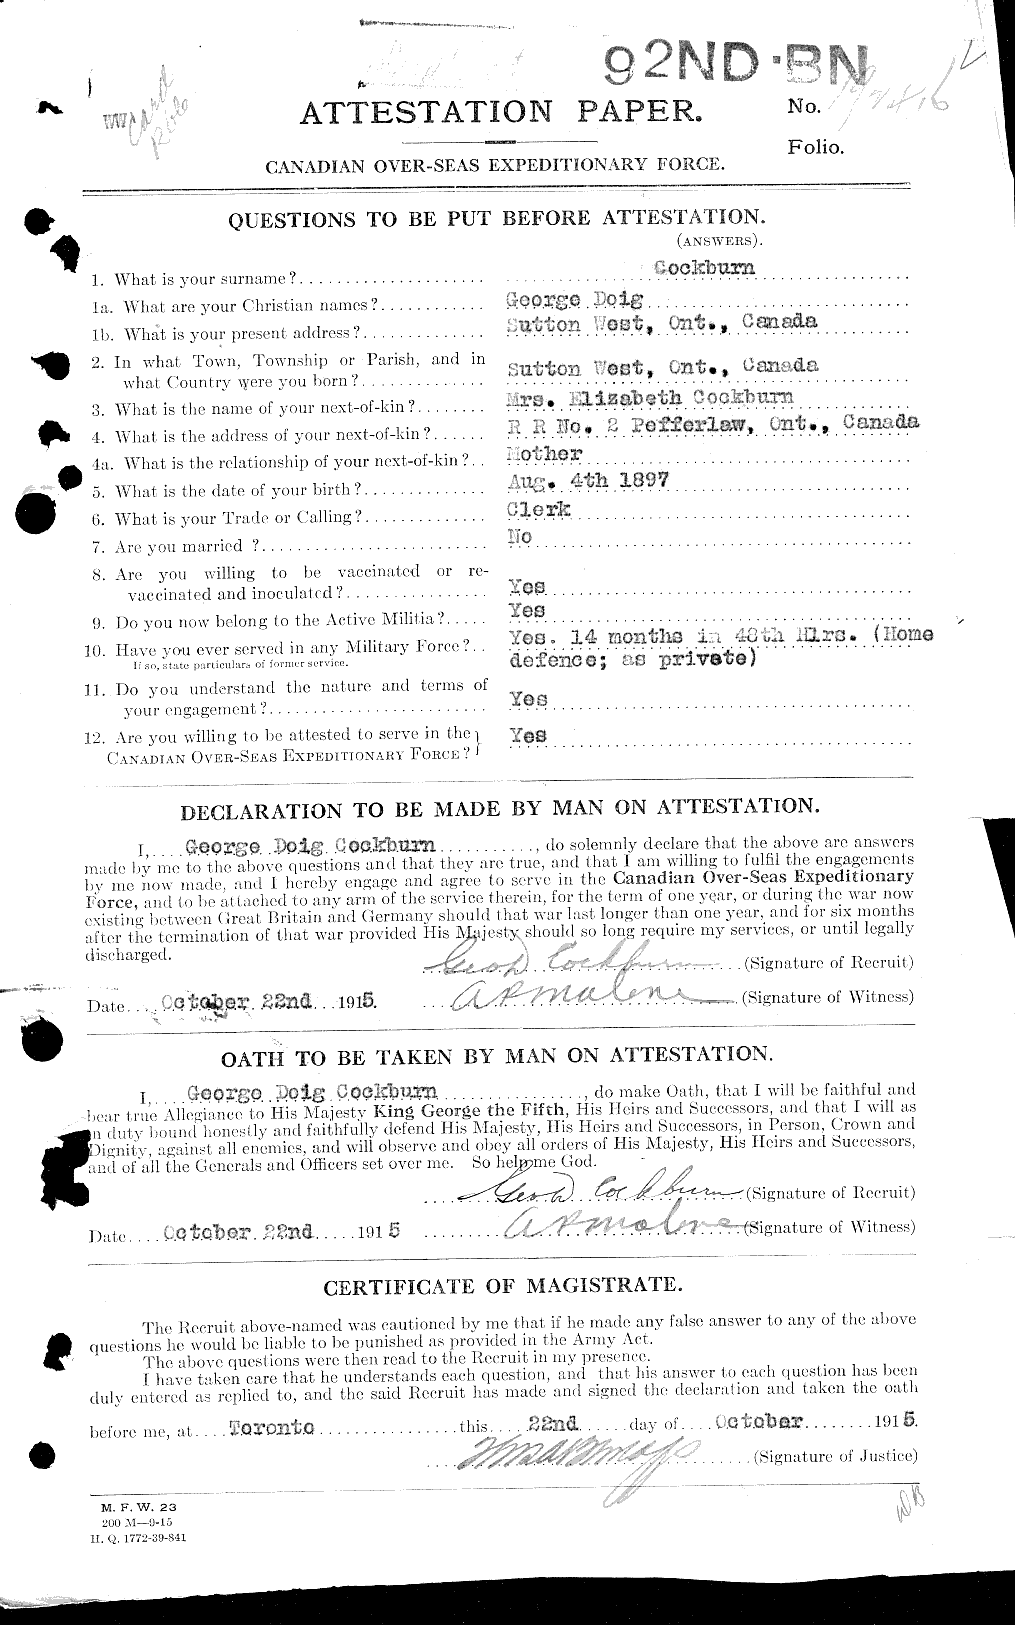 Dossiers du Personnel de la Première Guerre mondiale - CEC 026553a